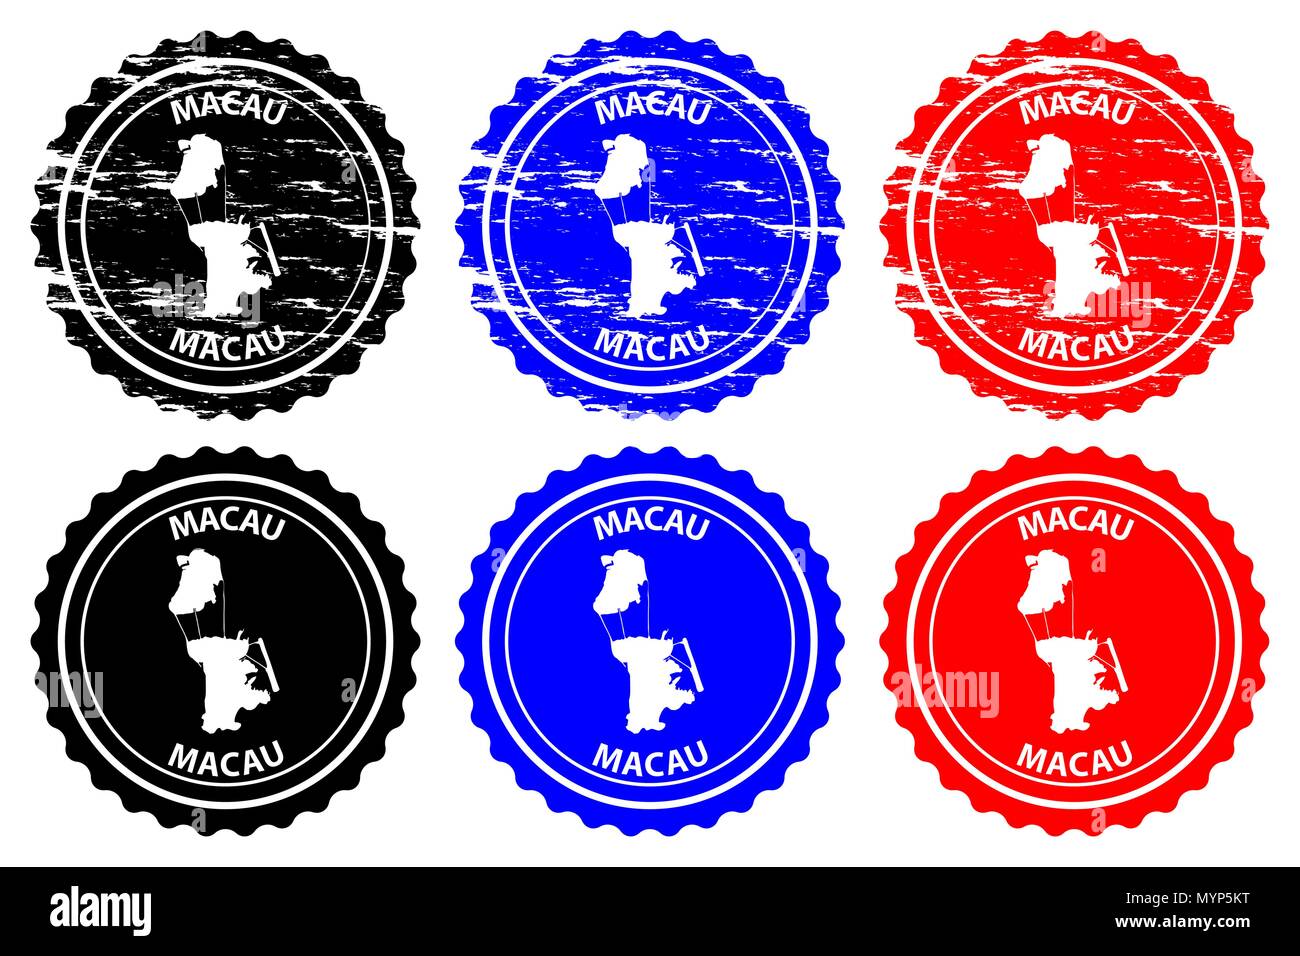 Macao - timbres en caoutchouc - vecteur, Région administrative spéciale de Macao de la République populaire de Chine site pattern - sticker - noir, bleu et rouge Illustration de Vecteur